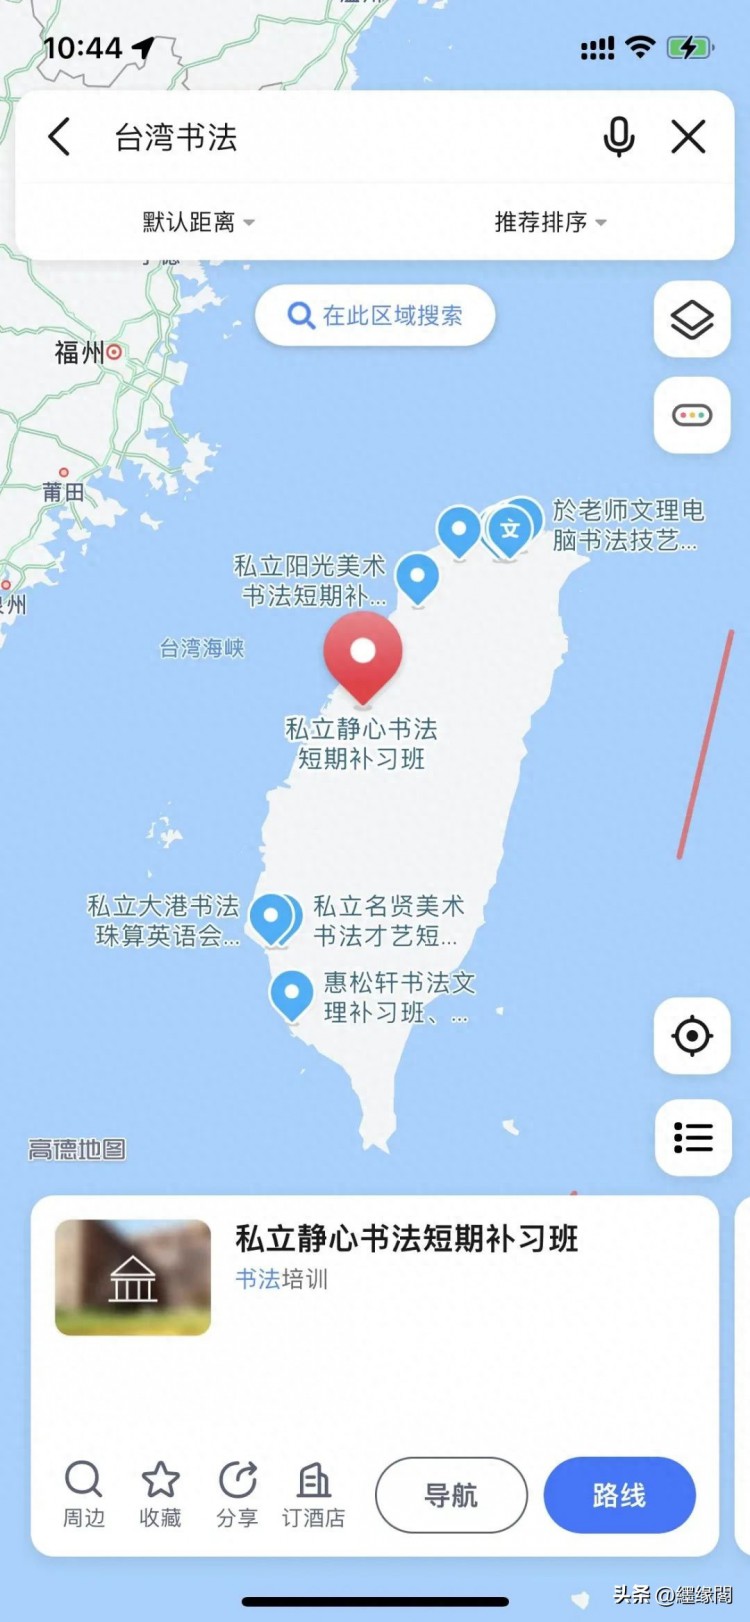 台湾地图大陆可查看后我搜下书法你猜猜有多少家书法培训